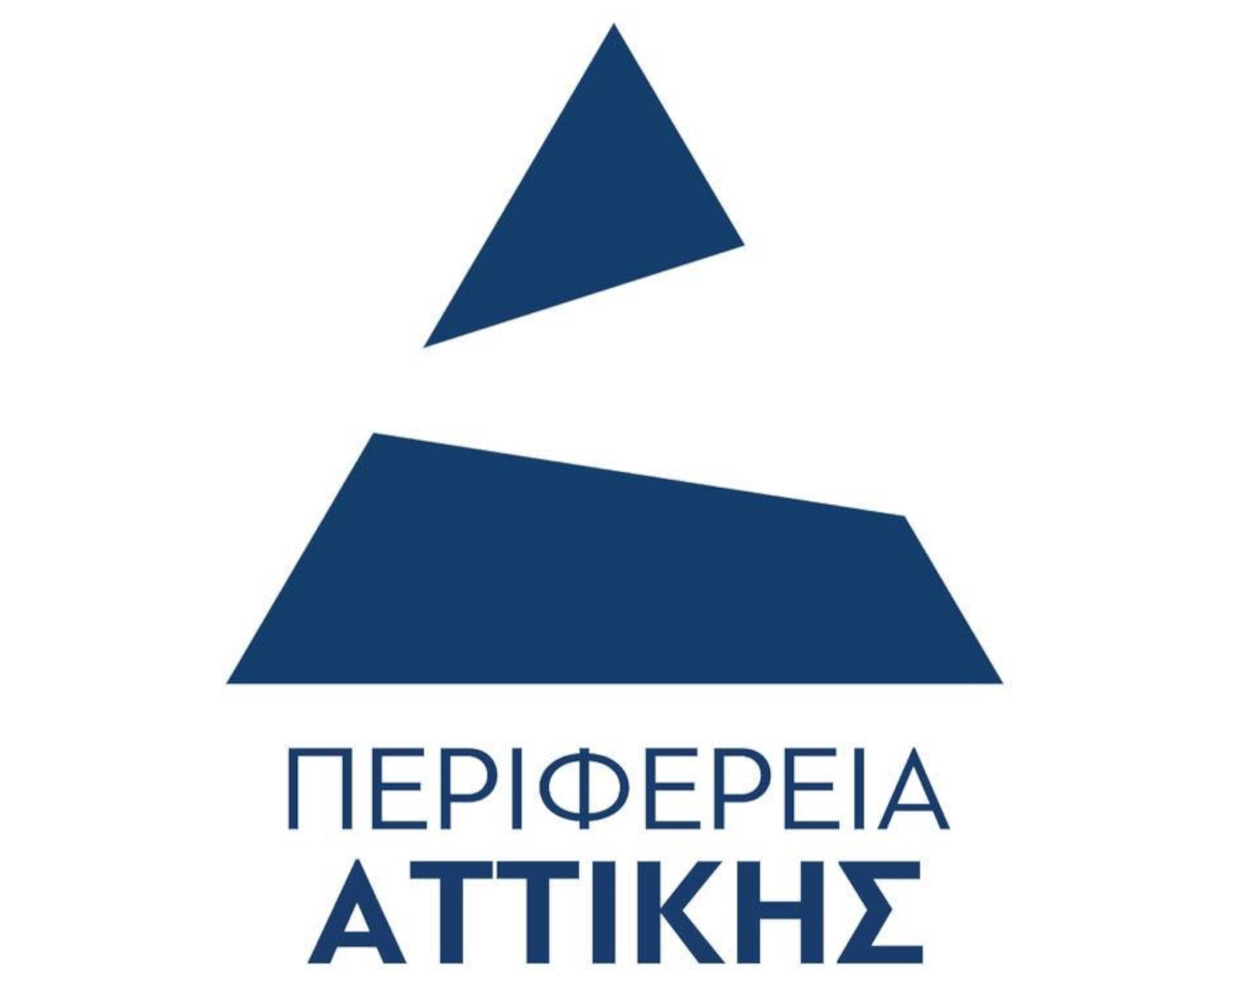 Περιφέρεια Αττικής: «Καμπανάκι» για απατεώνες που παριστάνουν υπαλλήλους της και οδηγίες προς τους πολίτες